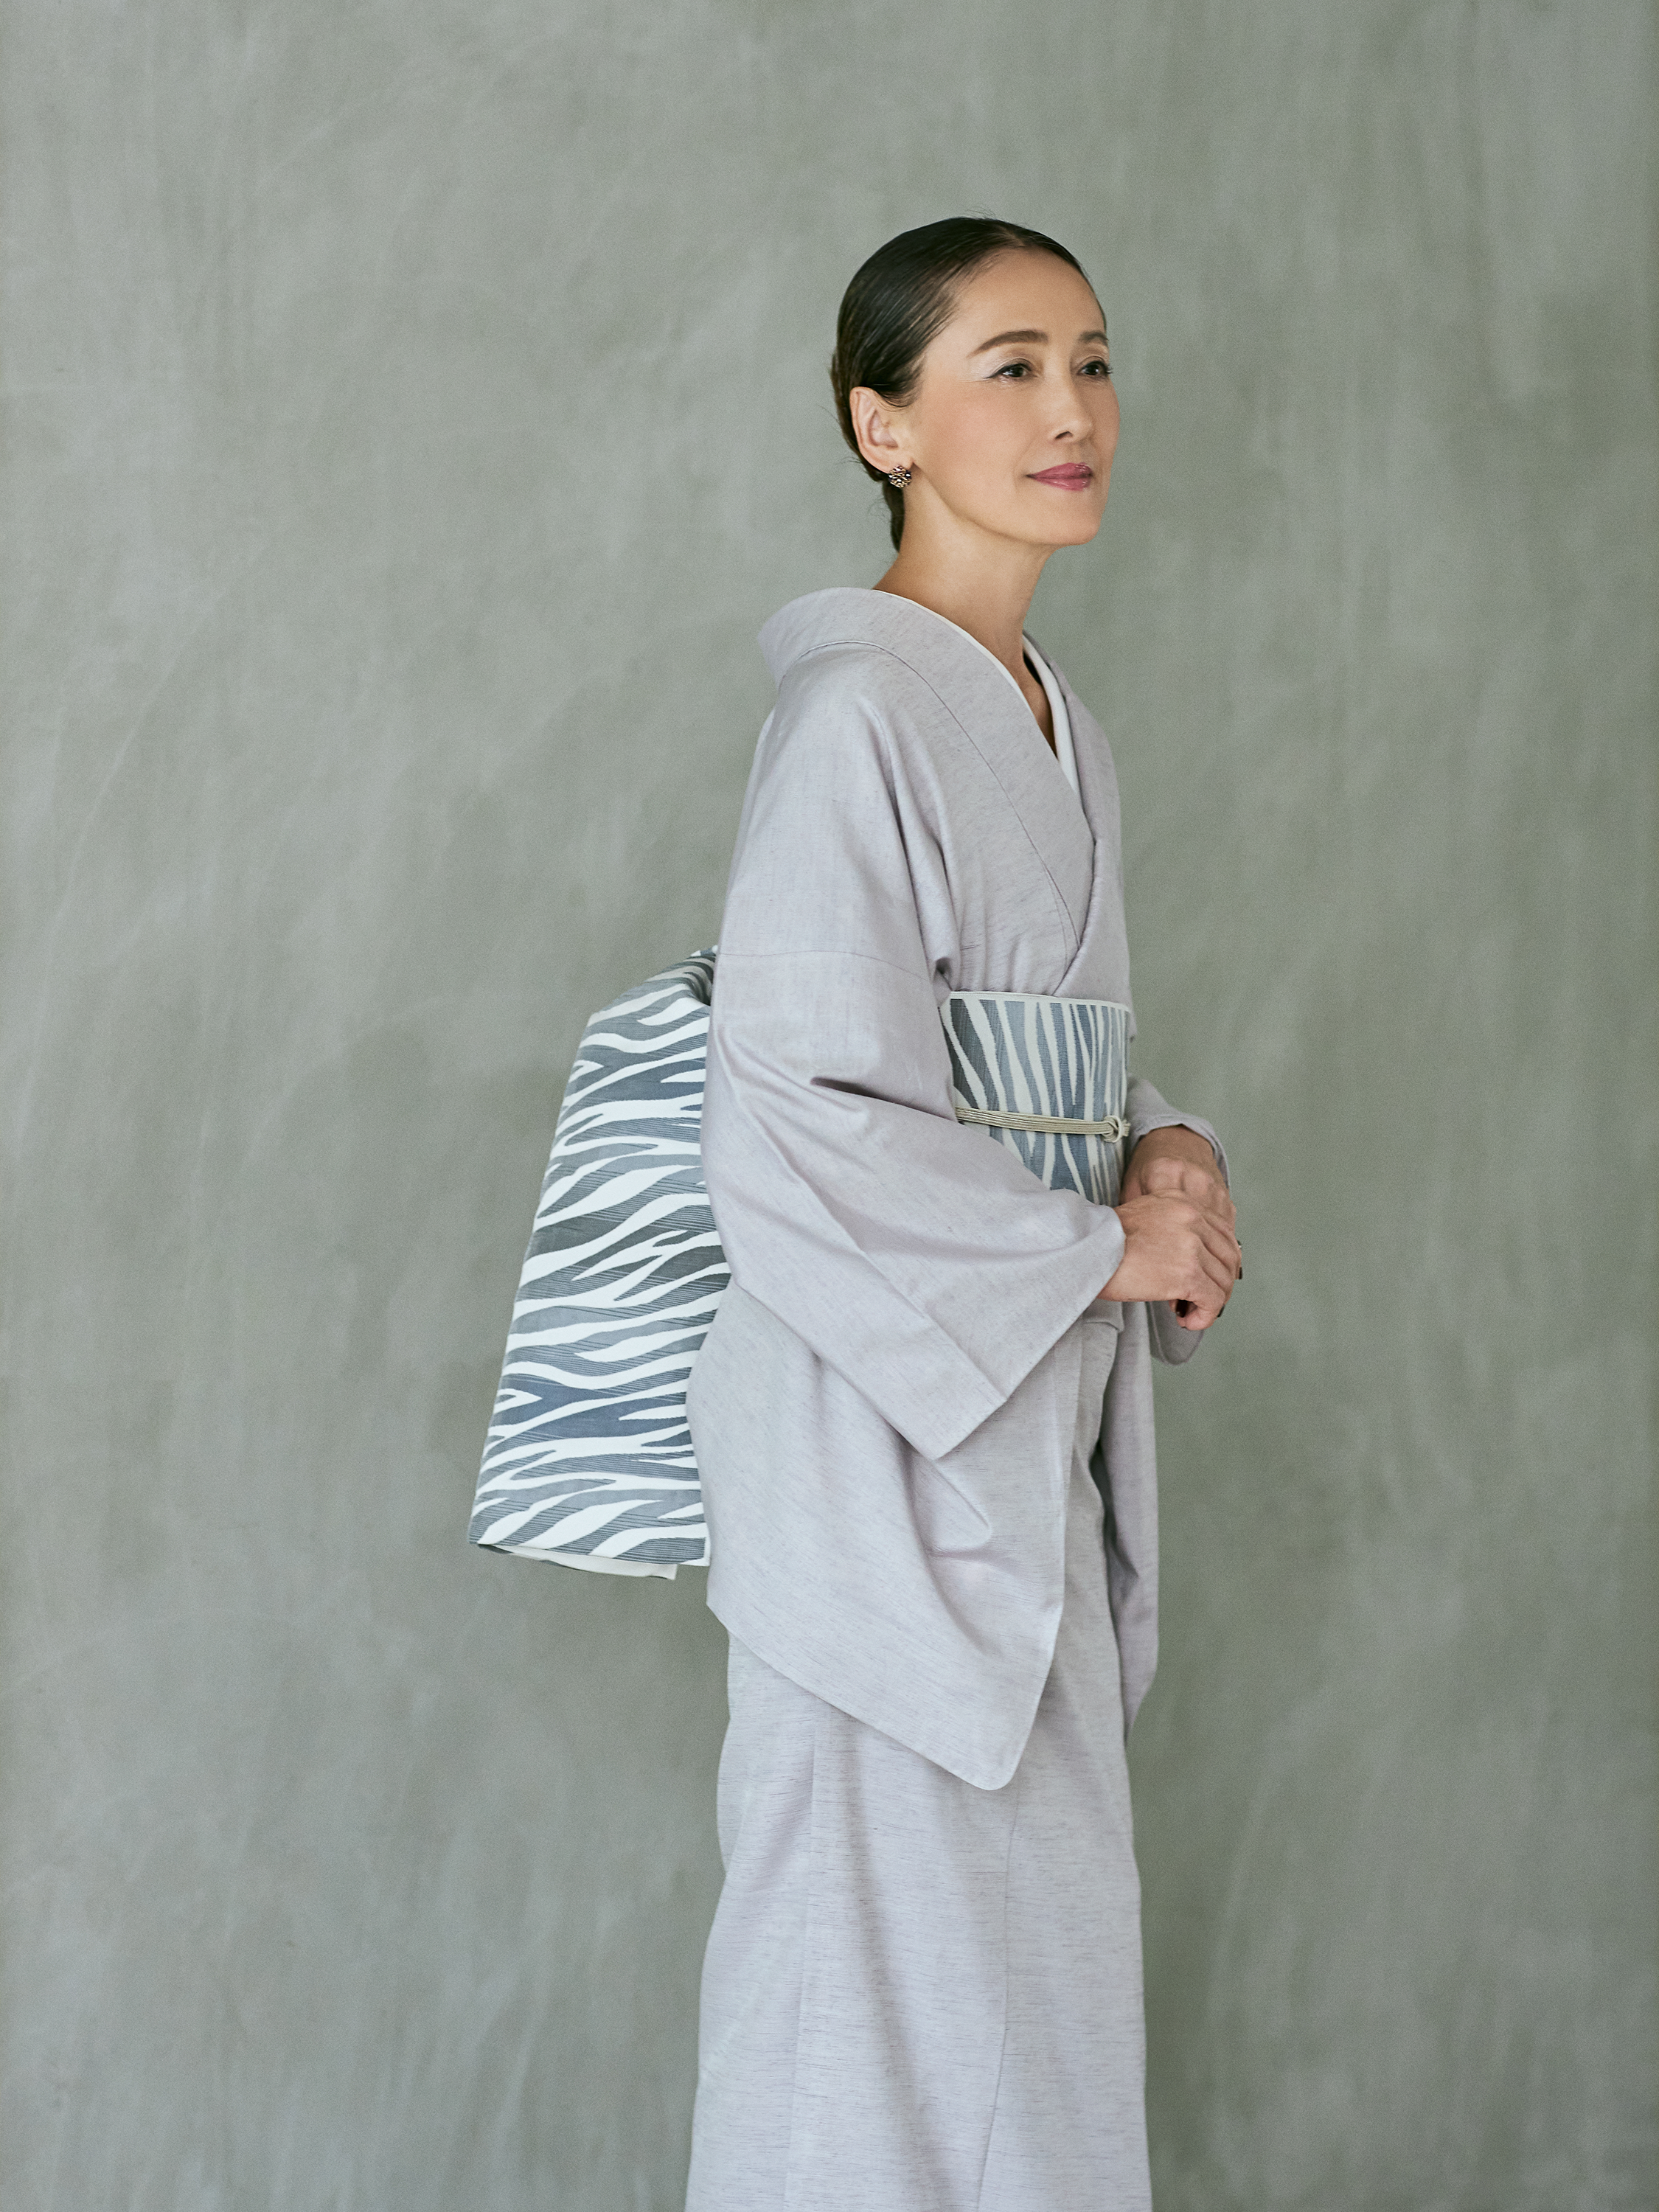 Fabric Yonezawa Ori Juyo Tsumugi “Hibiki” Light Purple